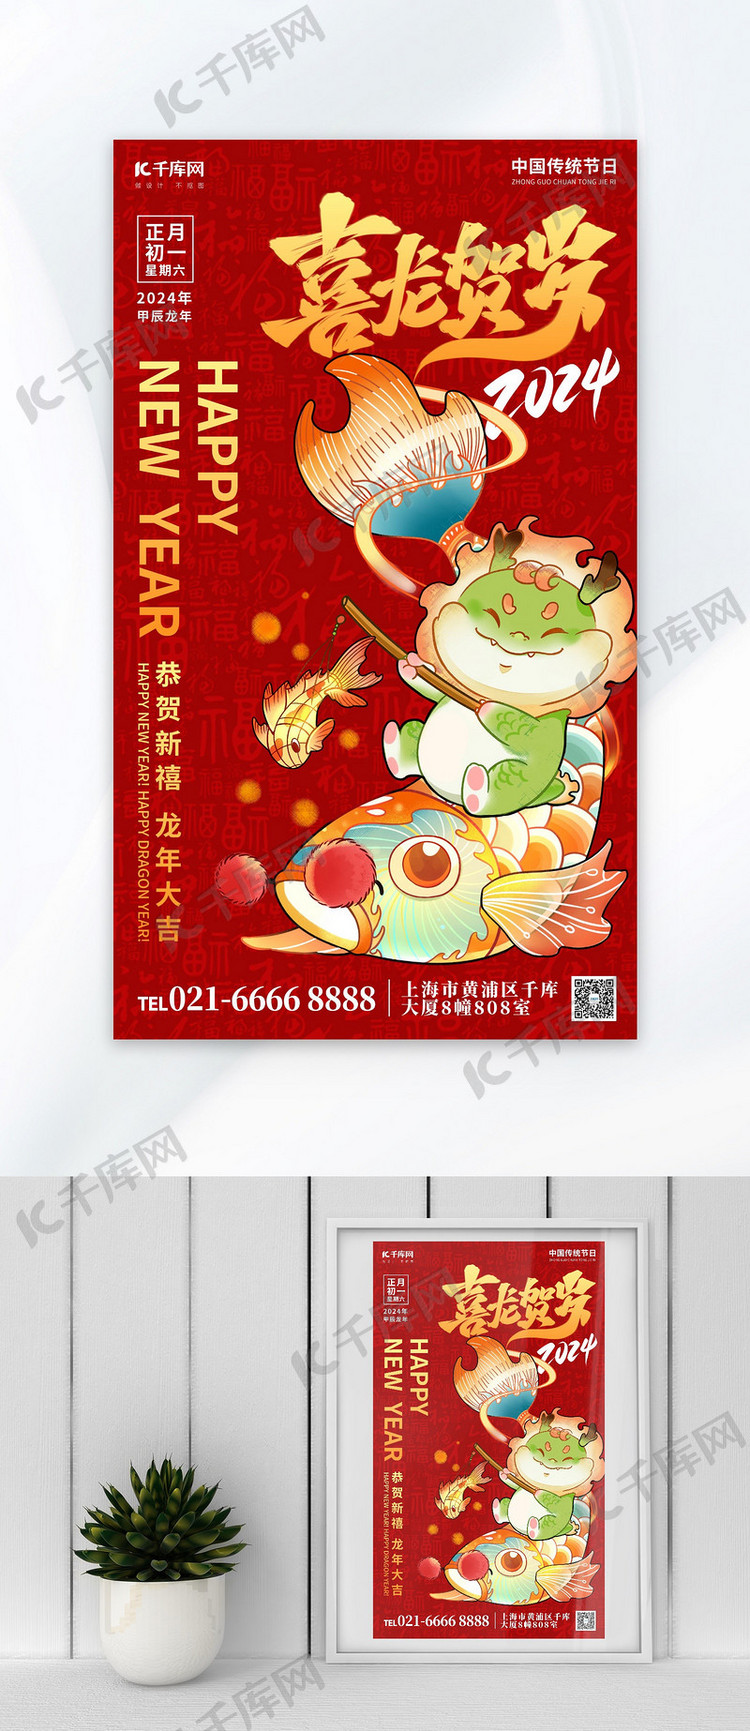 喜龙贺岁中国龙锦鲤红色创意手绘广告宣传海报